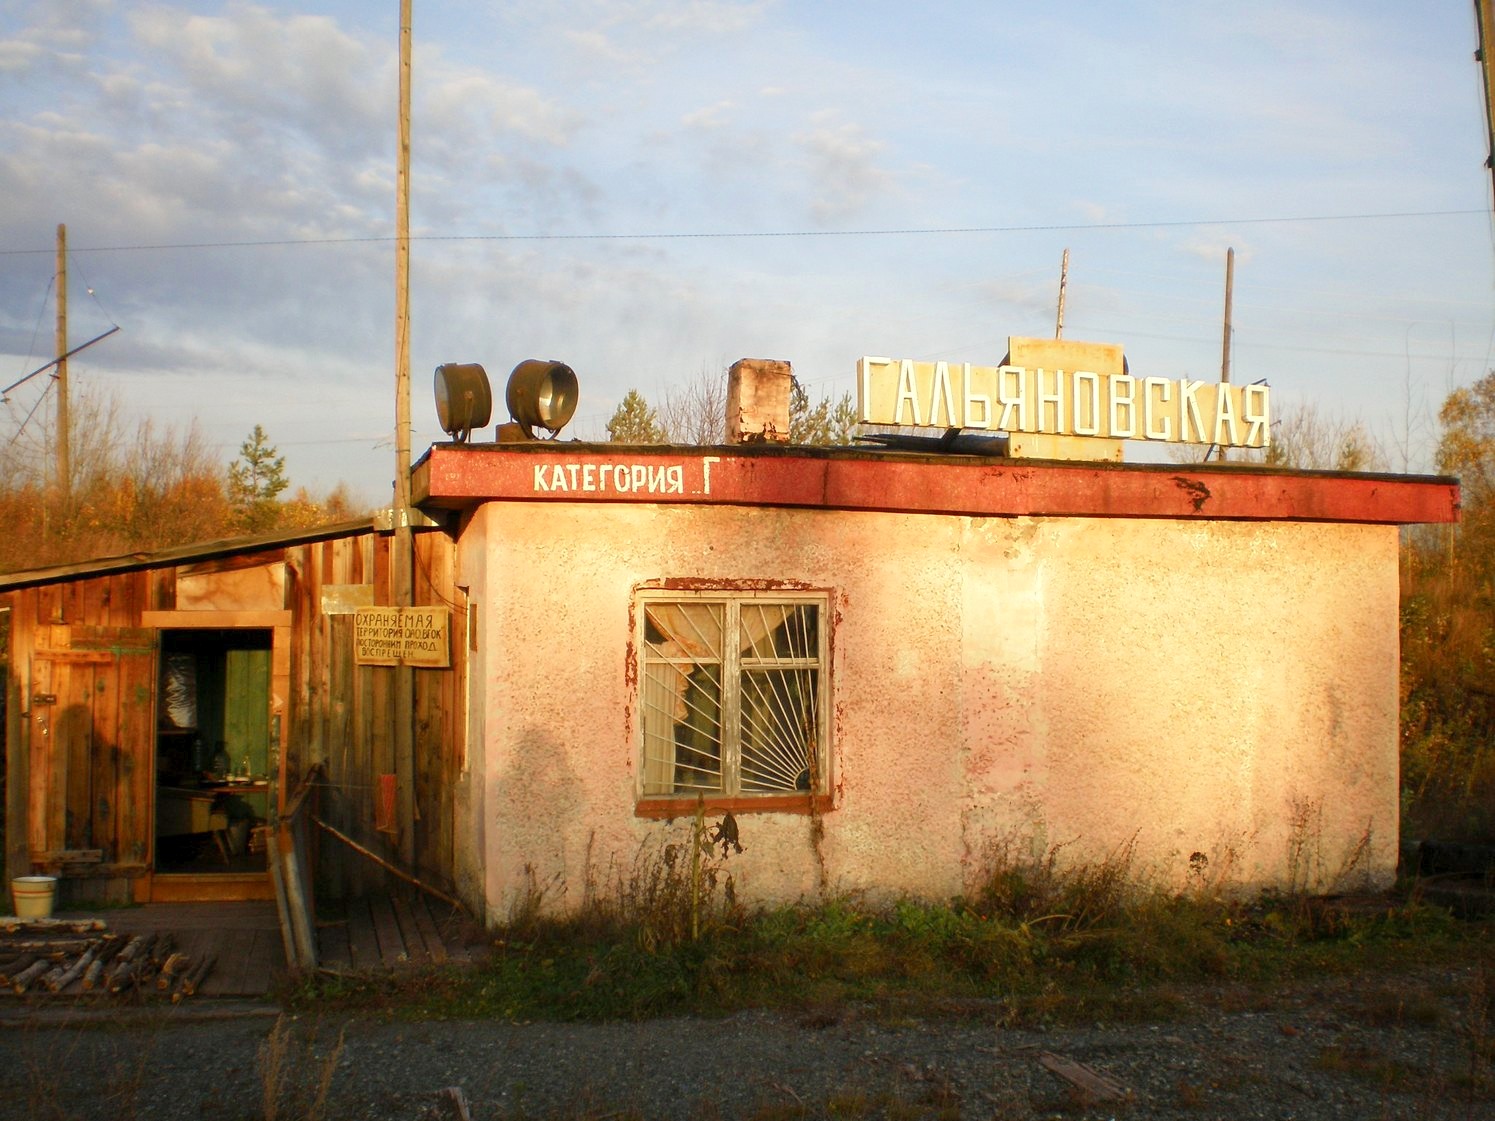 Висимо-Уткинская узкоколейная железная дорога  — фотографии, сделанные в 2007 году (часть 1)